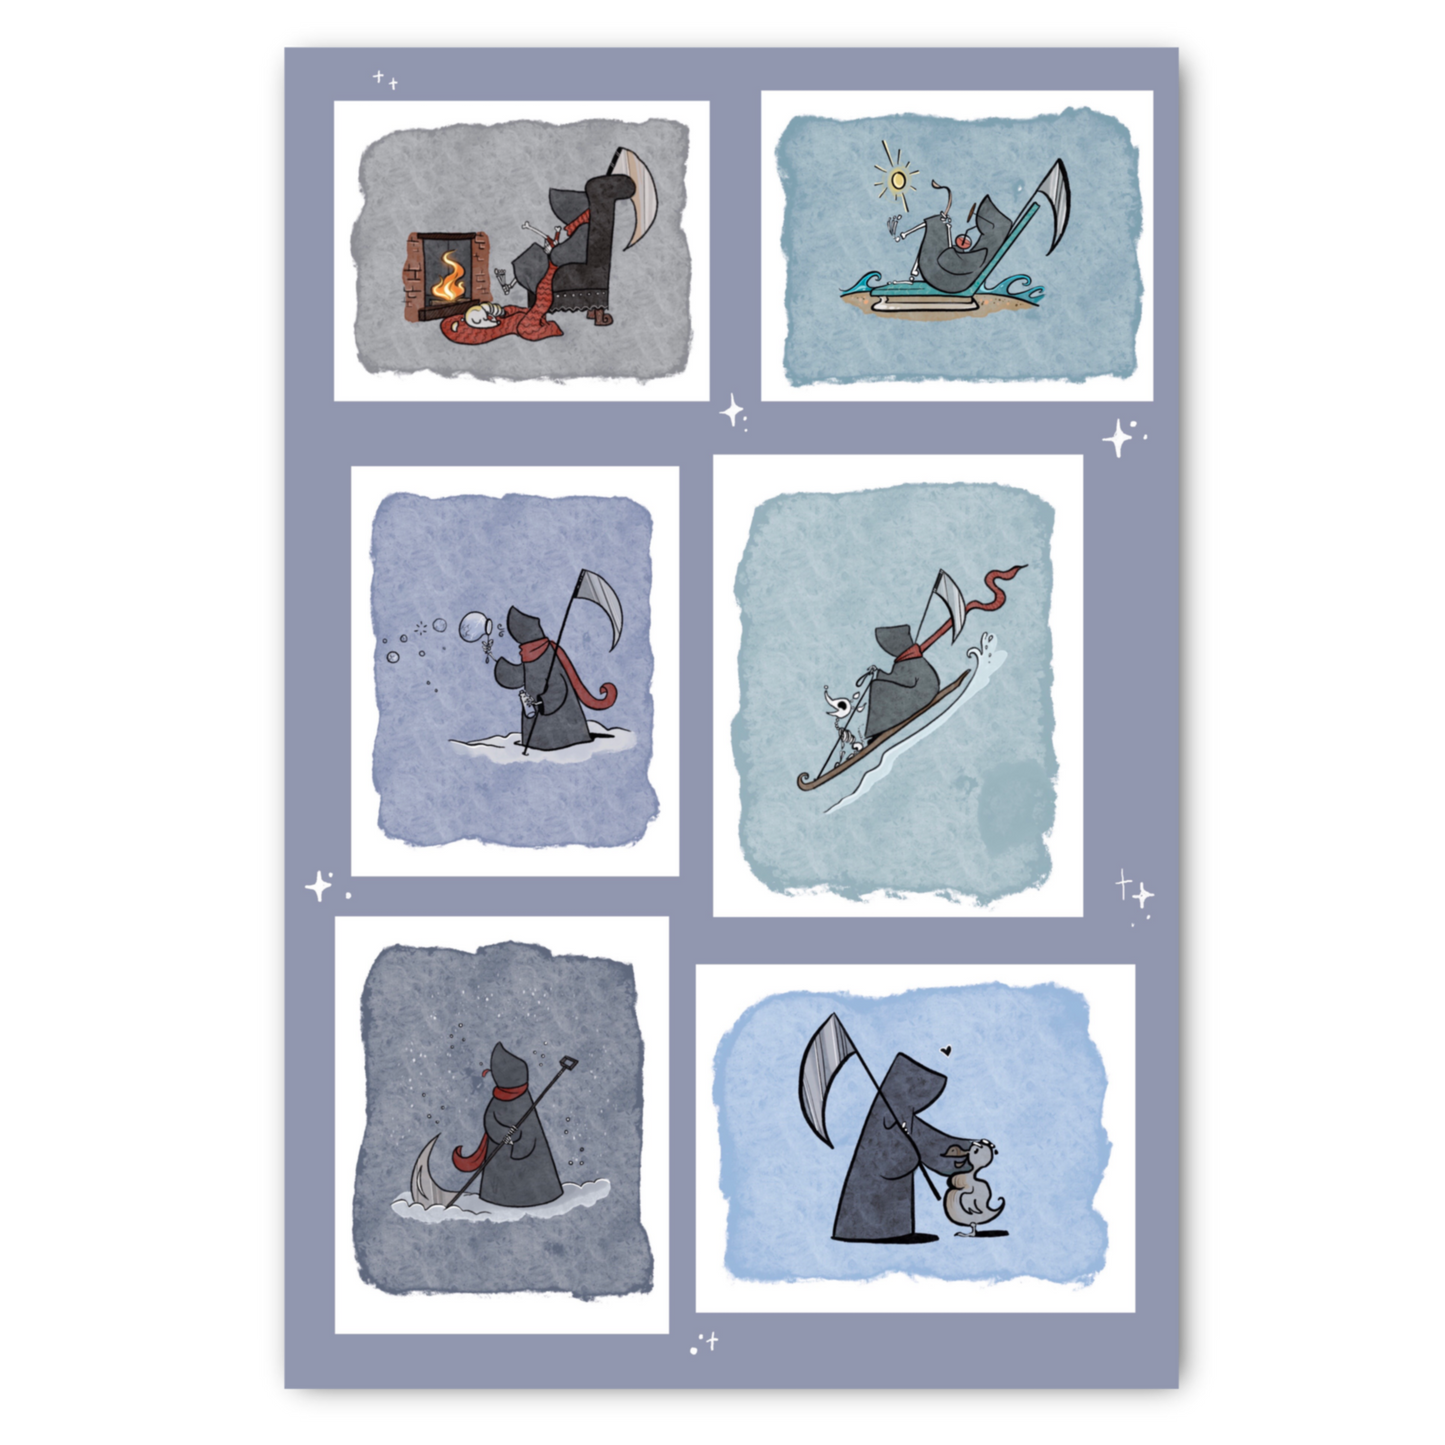 Grim Reaper mundane tasks assortment- Sticker Sheet